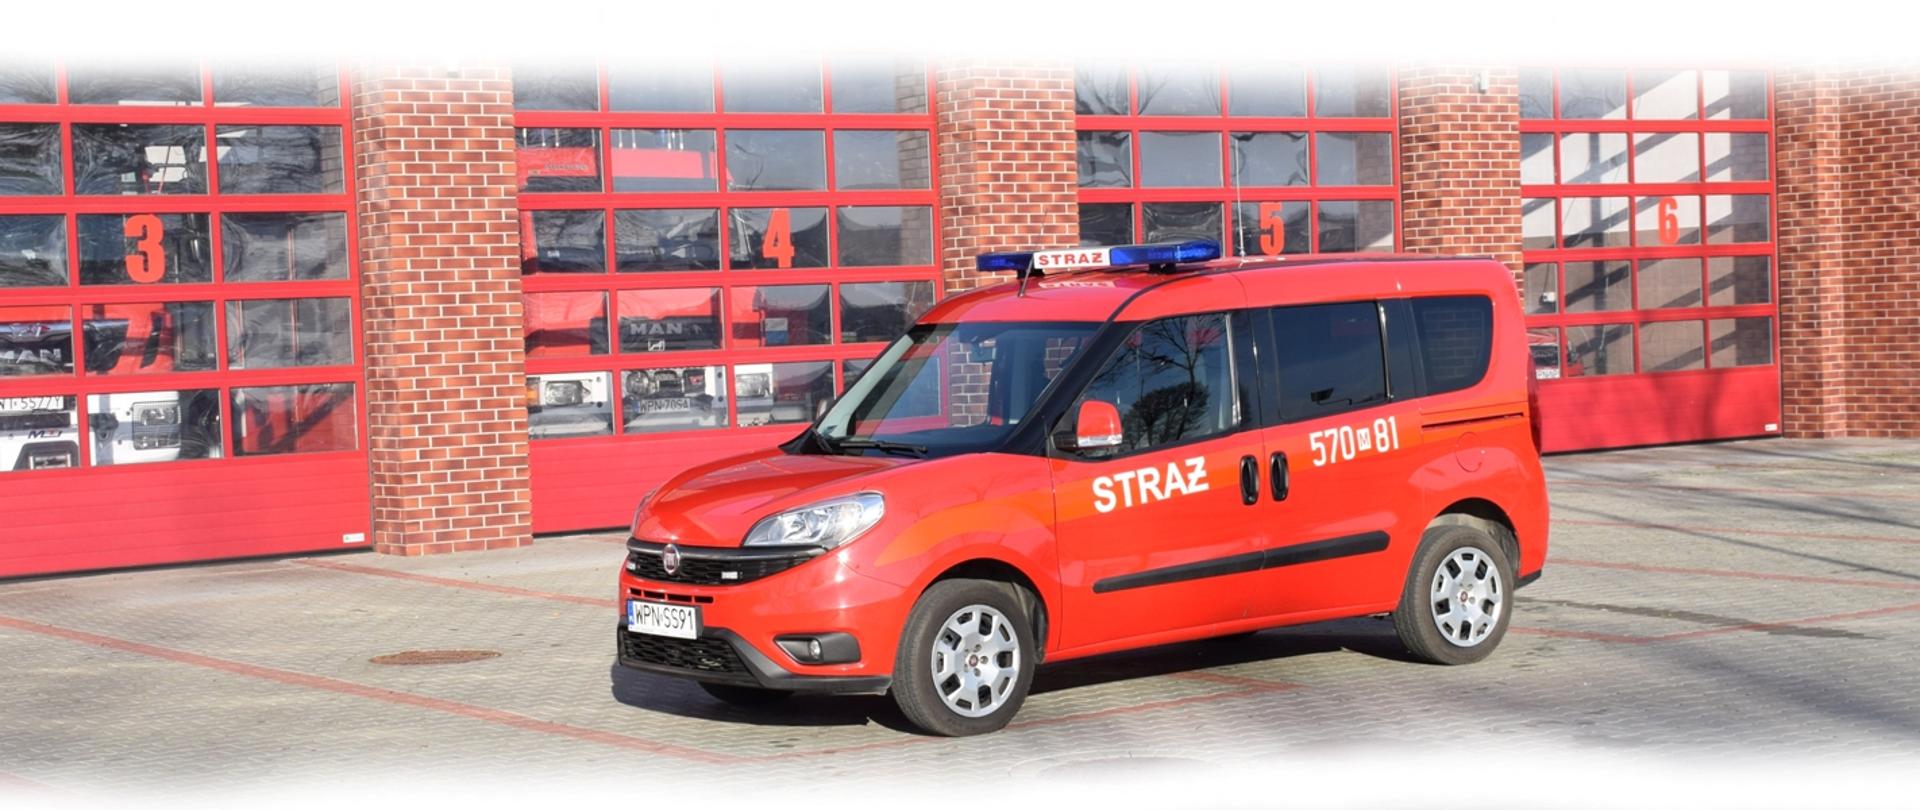 samochód pożarniczy, czerwony, kwatermistrzowski, ustawiony przed garażem, KP PSP Płońsk, 2020 r.